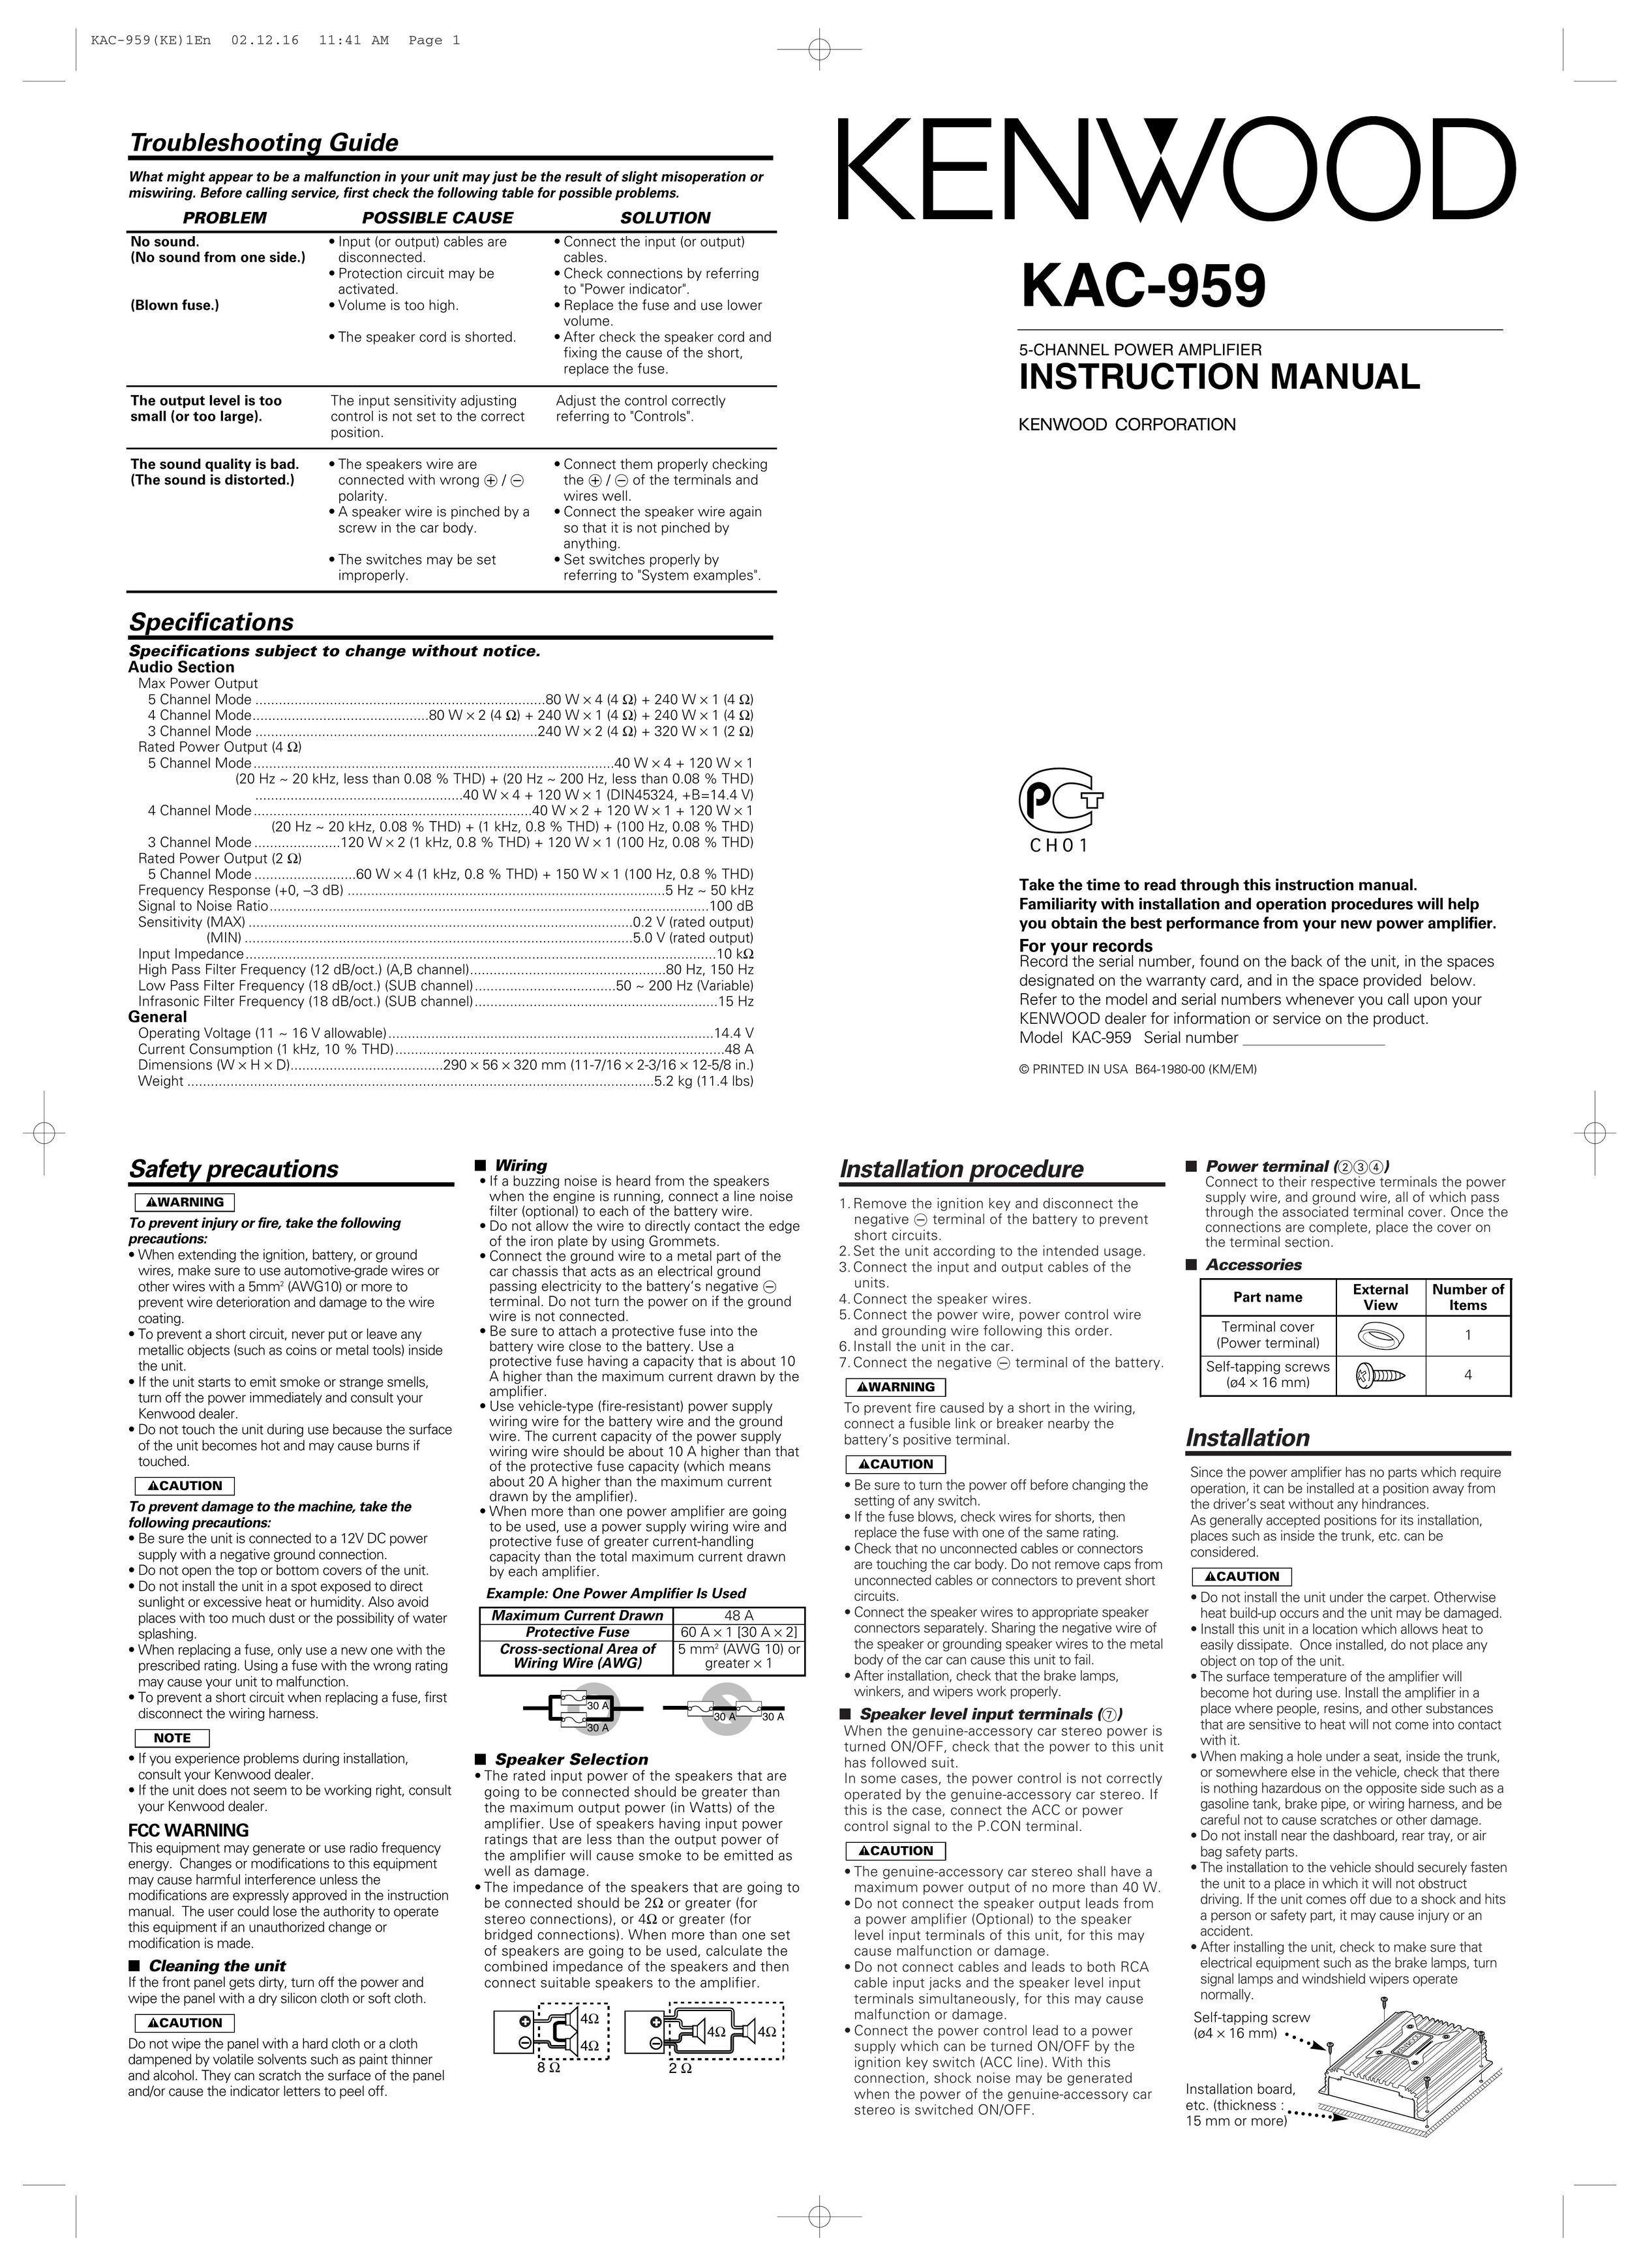 Kenwood KAC-959 Car Amplifier User Manual